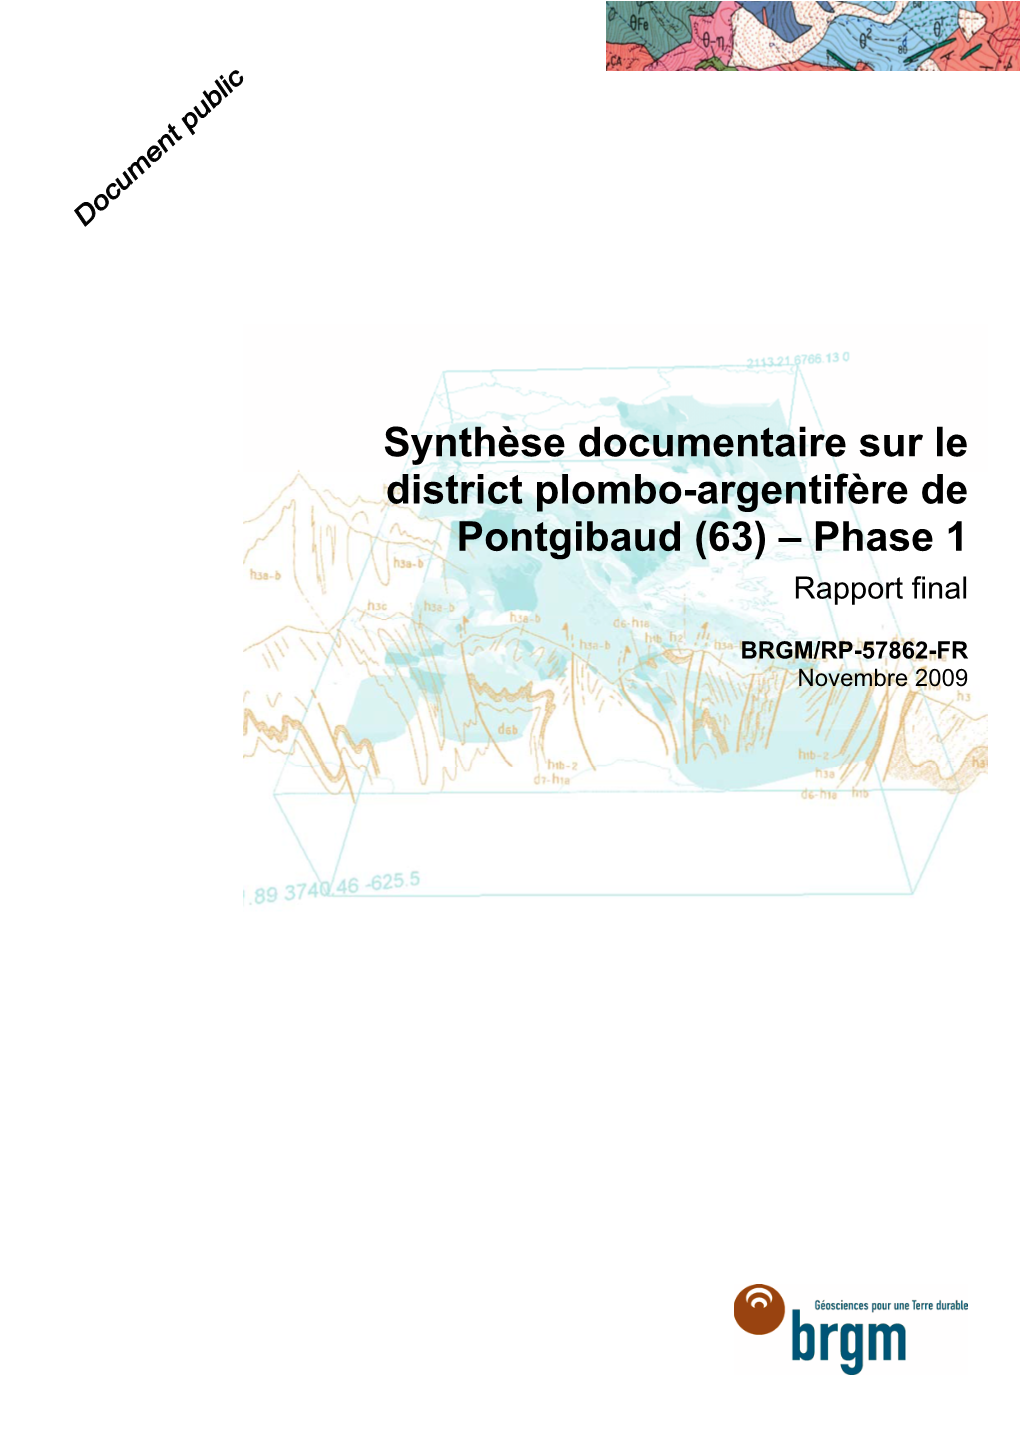 Synthèse Documentaire Sur Le District Plombo-Argentifère De Pontgibaud (63) – Phase 1 Rapport Final